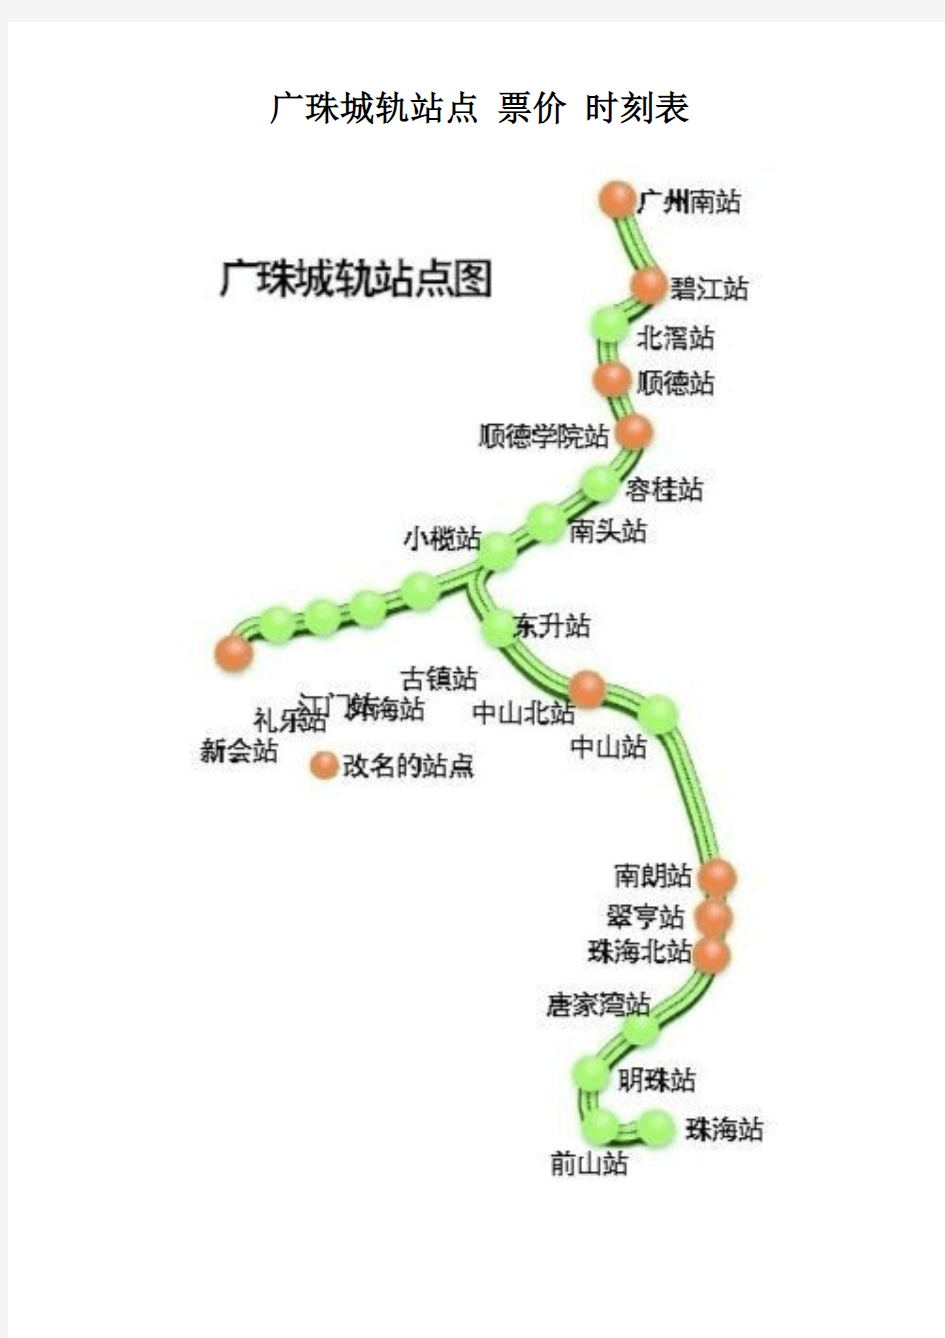 广珠城轨站点-票价-时刻表-乘车必备